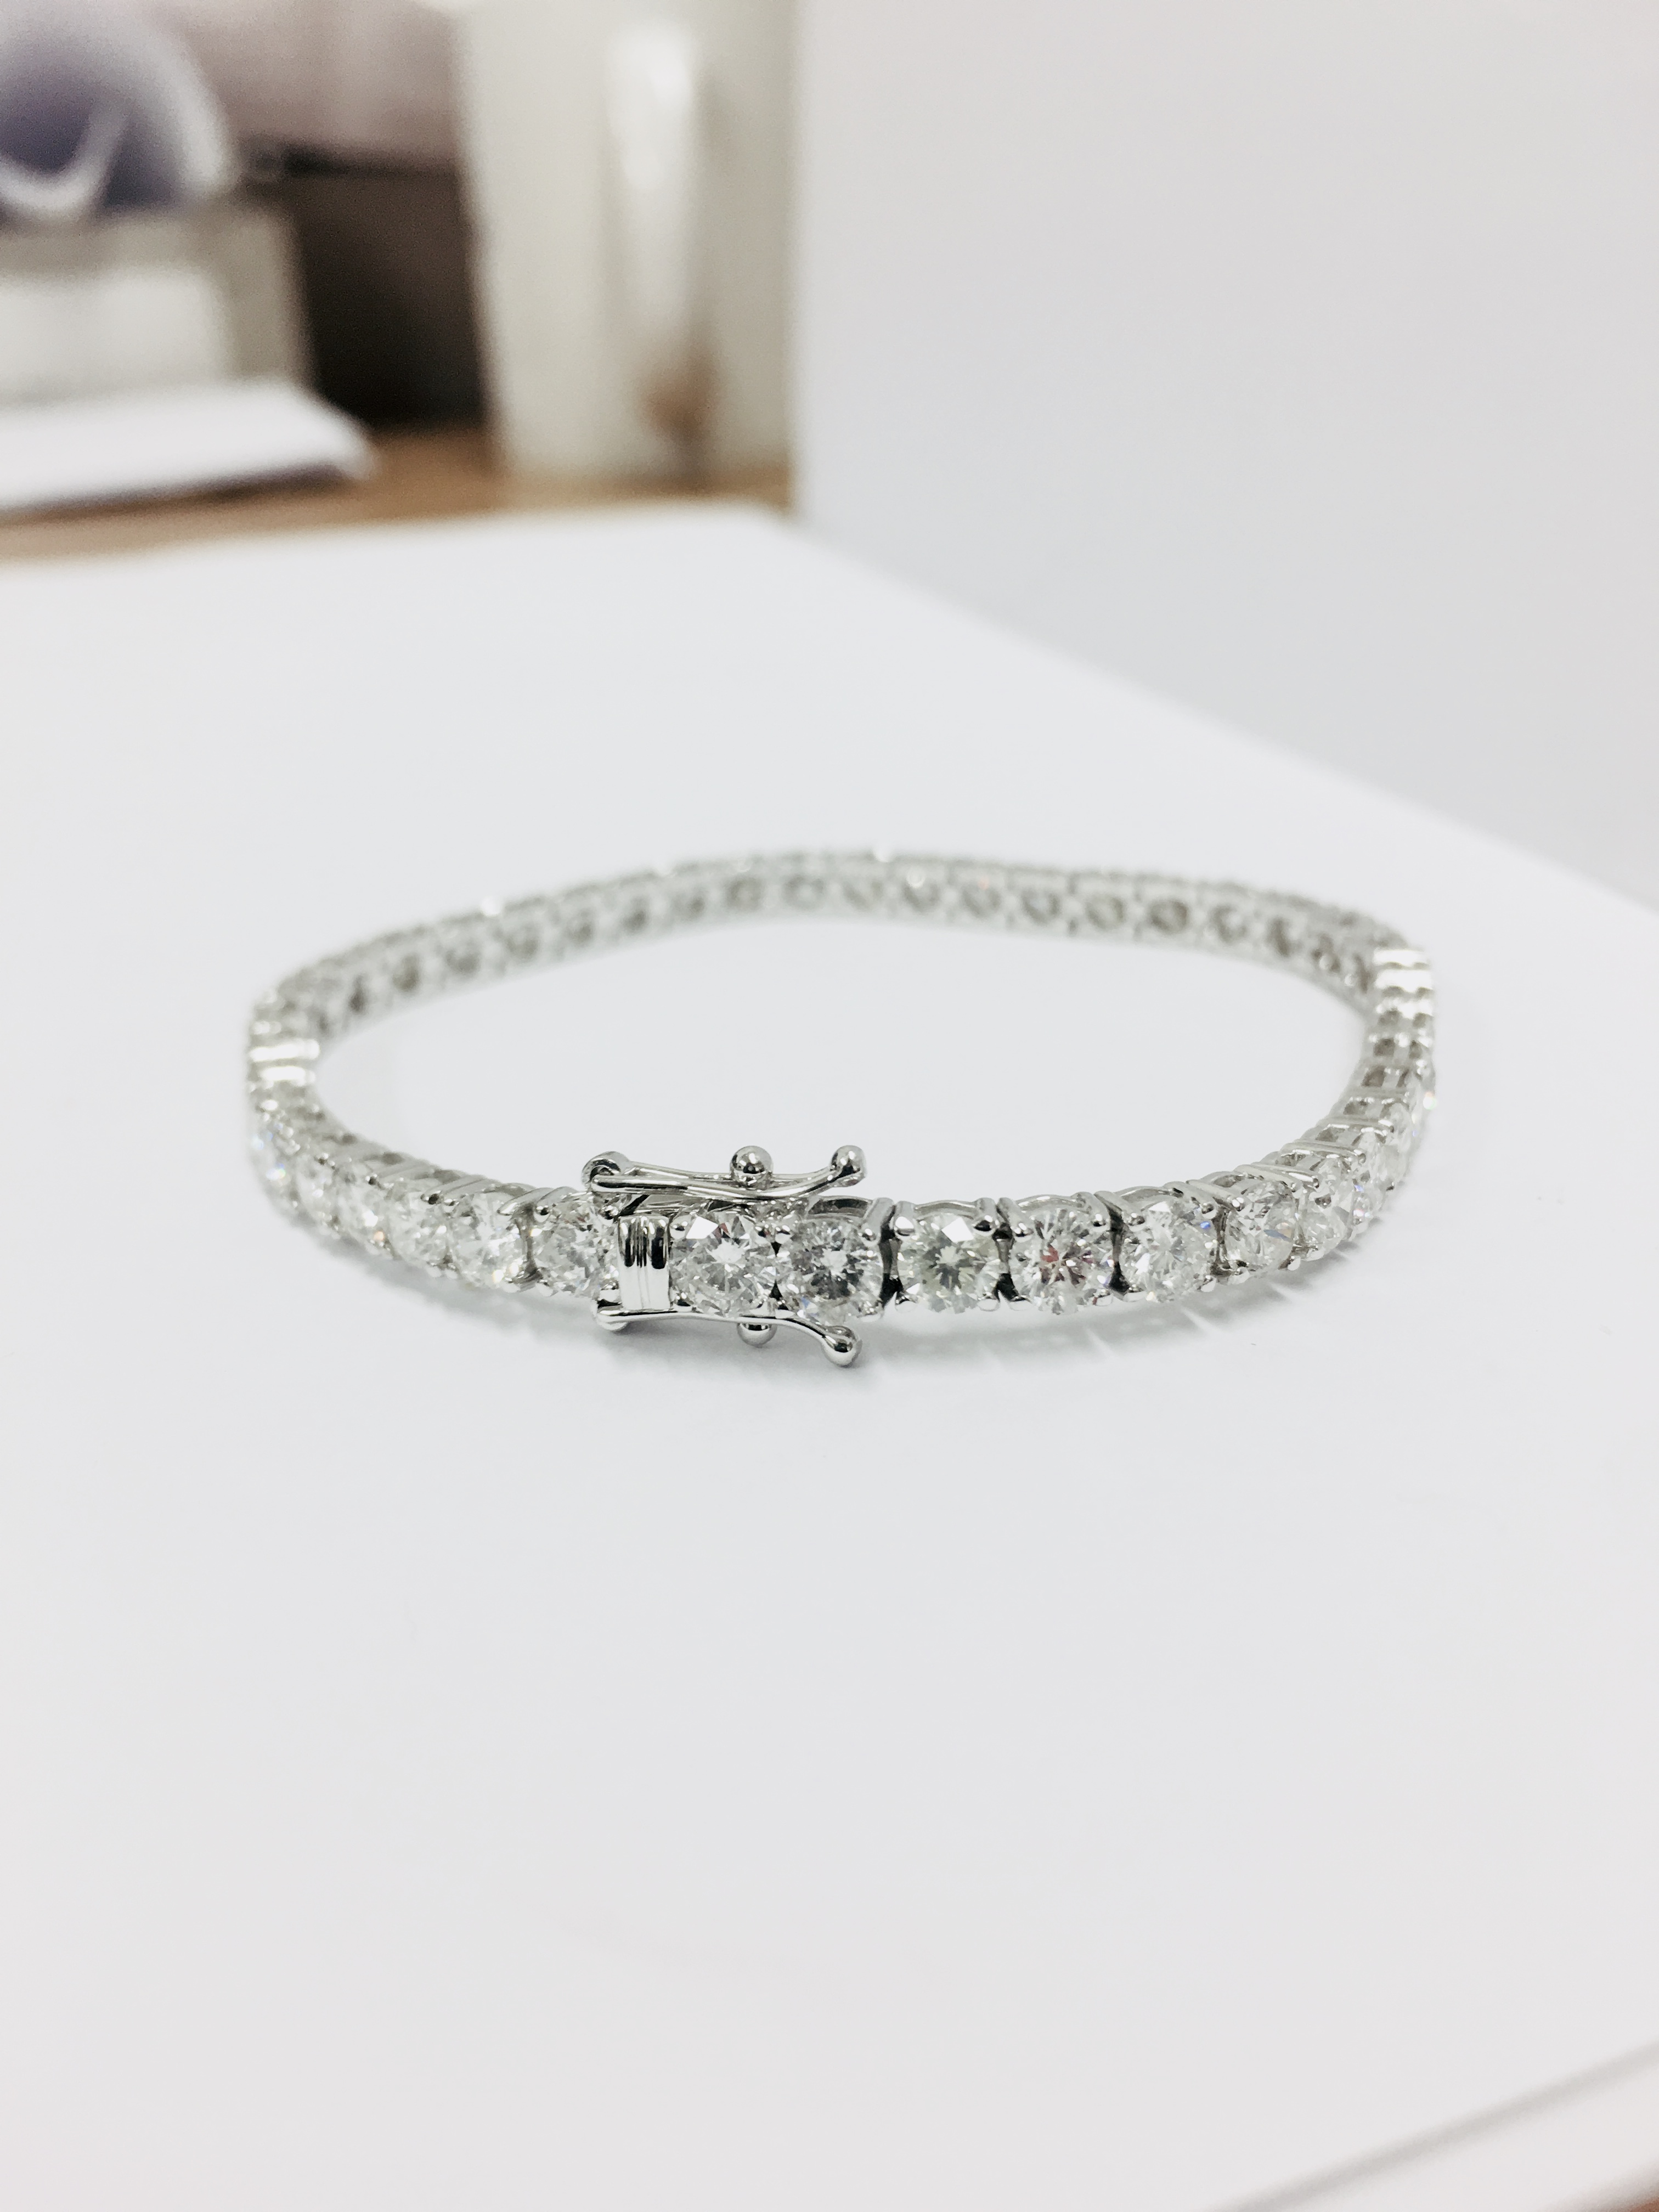 10.50ct Diamond tennis bracelet set with brilliant cut diamonds of H colour